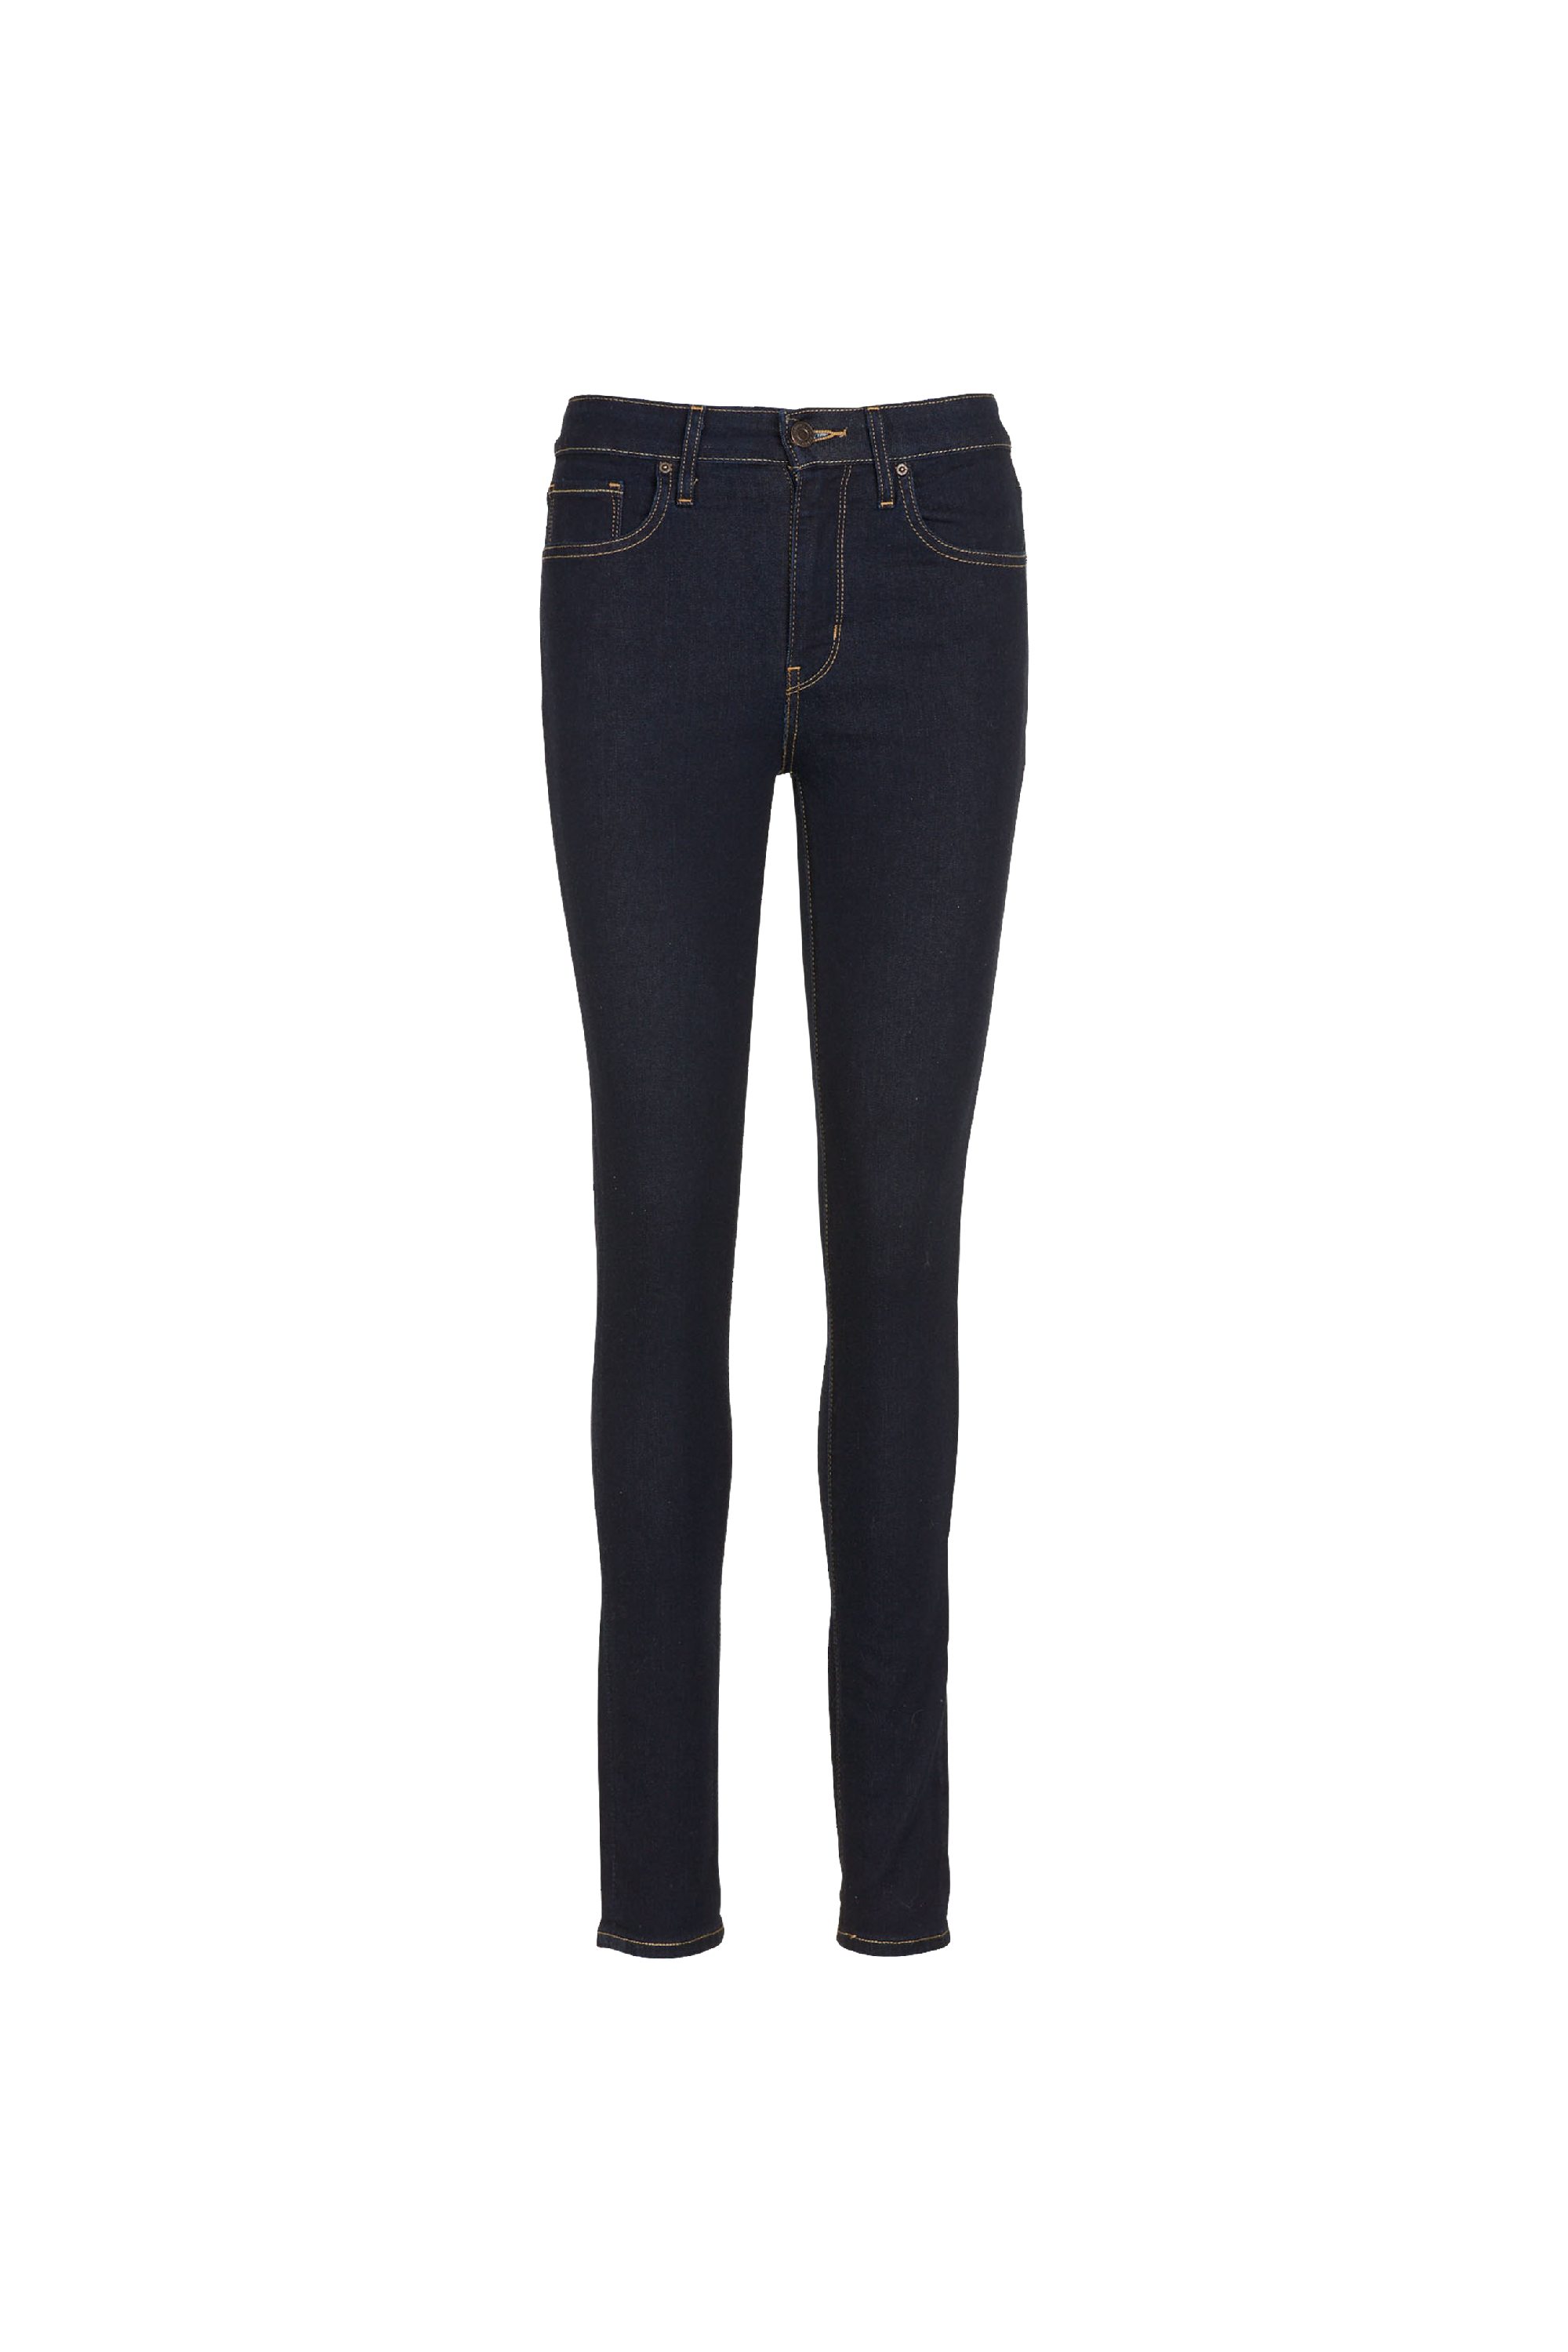 Citadium Femme Vêtements Pantalons & Jeans Jeans Bootcut jeans Tommy Jeans 